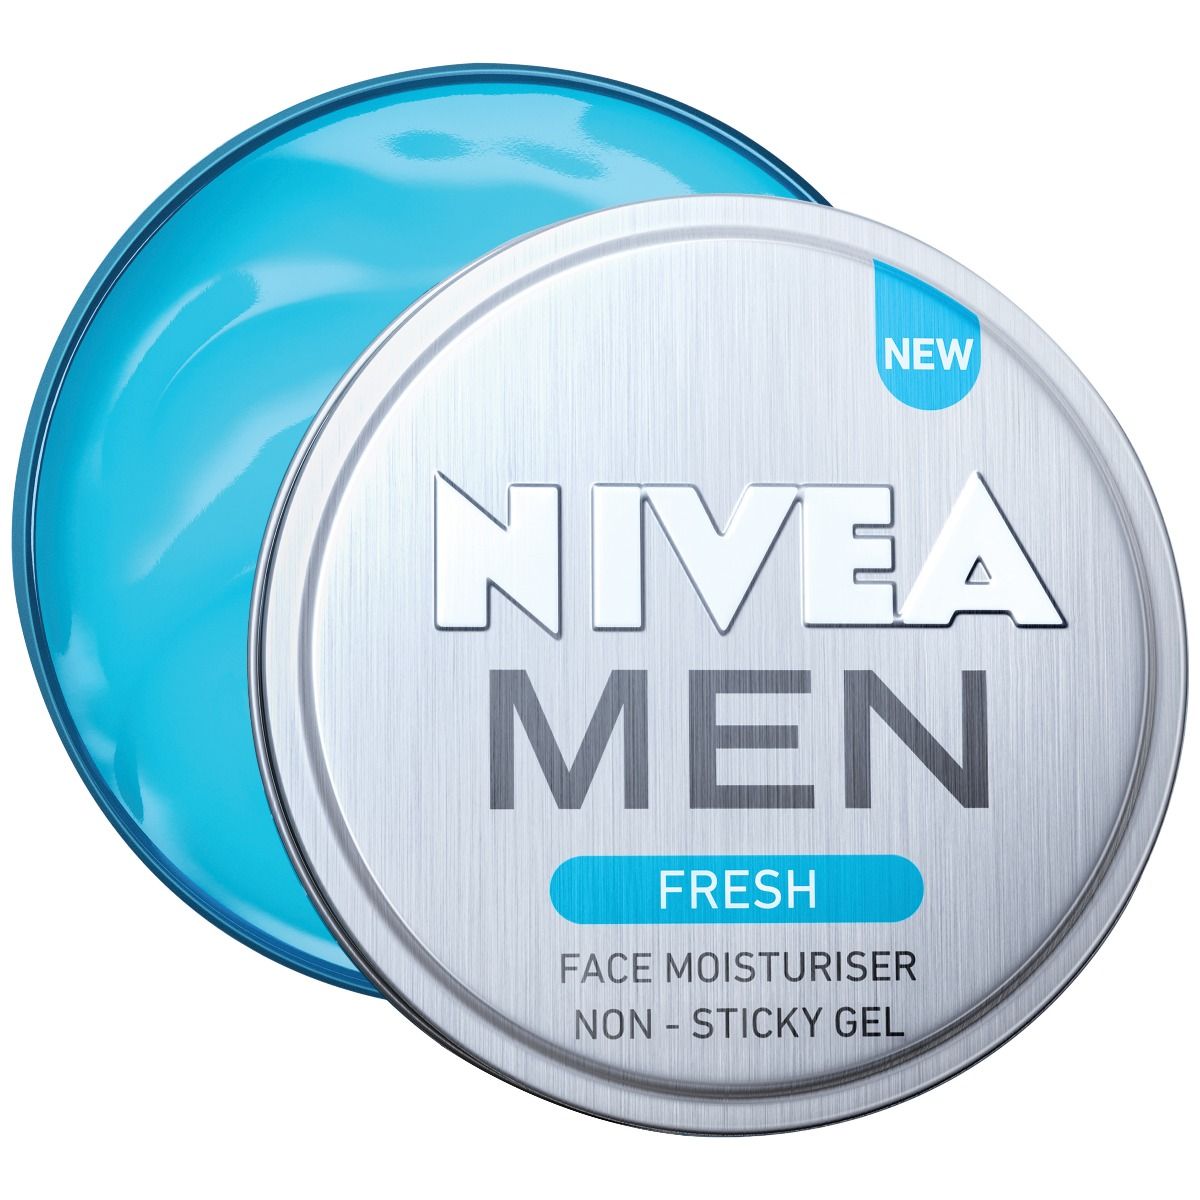 Nivea Men Fresh Face Moisturiser Non - Sticky Gel, 75 ml, Pack of 1 